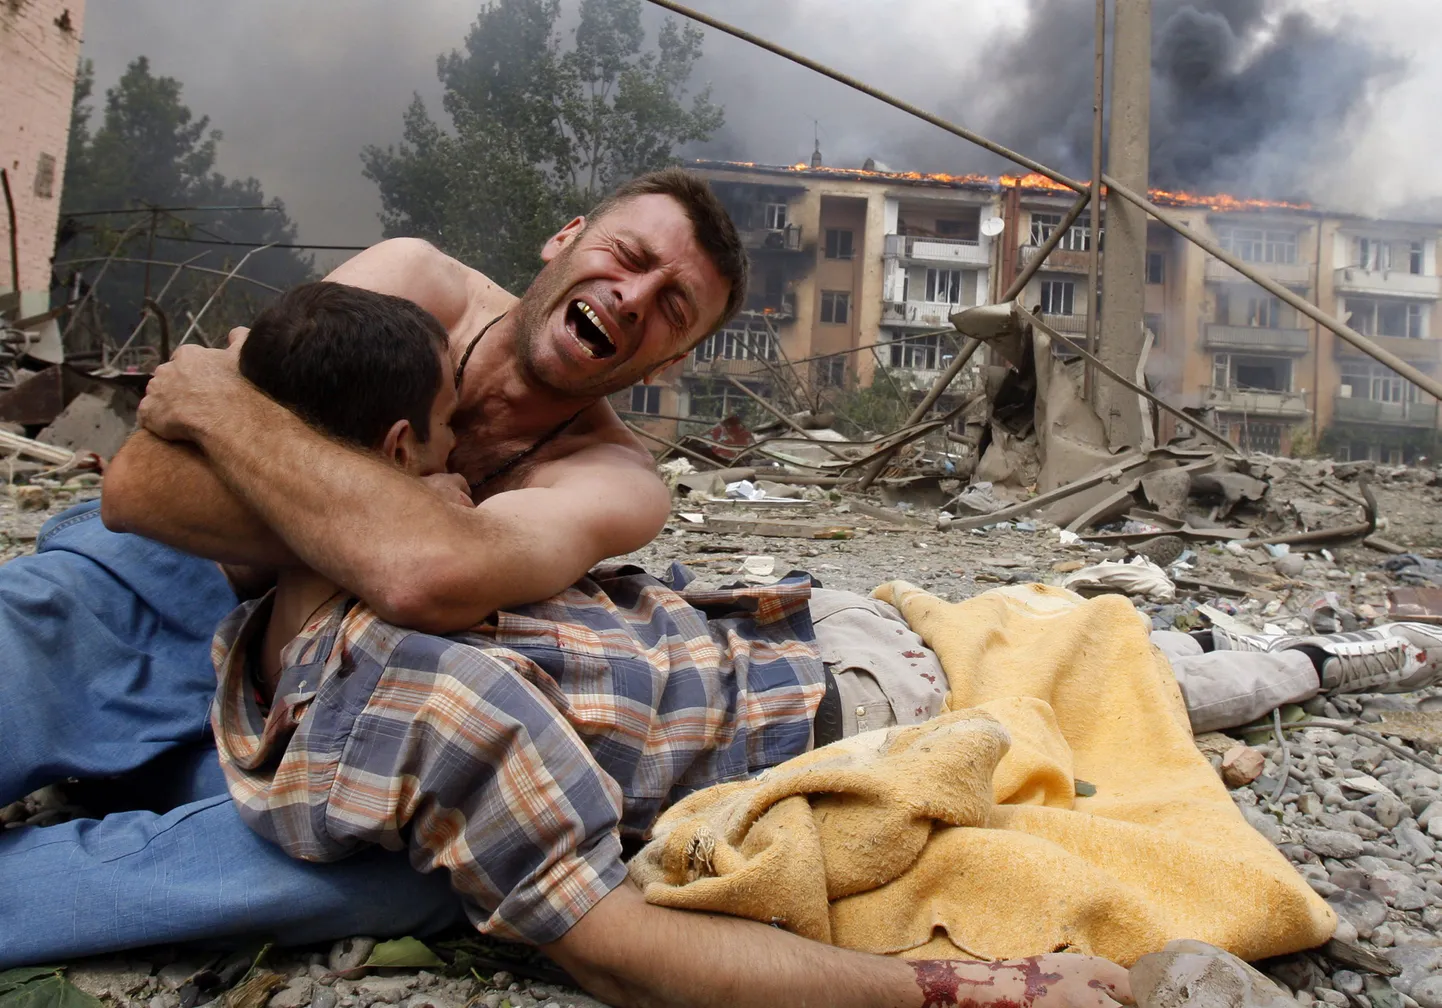 Kuulsaim pilt 2008. aasta Gruusia-Vene augustisõjast. Foto autor on Gleb Garanich ning 2008. aastal jõudis pilt World Press Photo uudisfoto kategoorias kolmandale kohale.